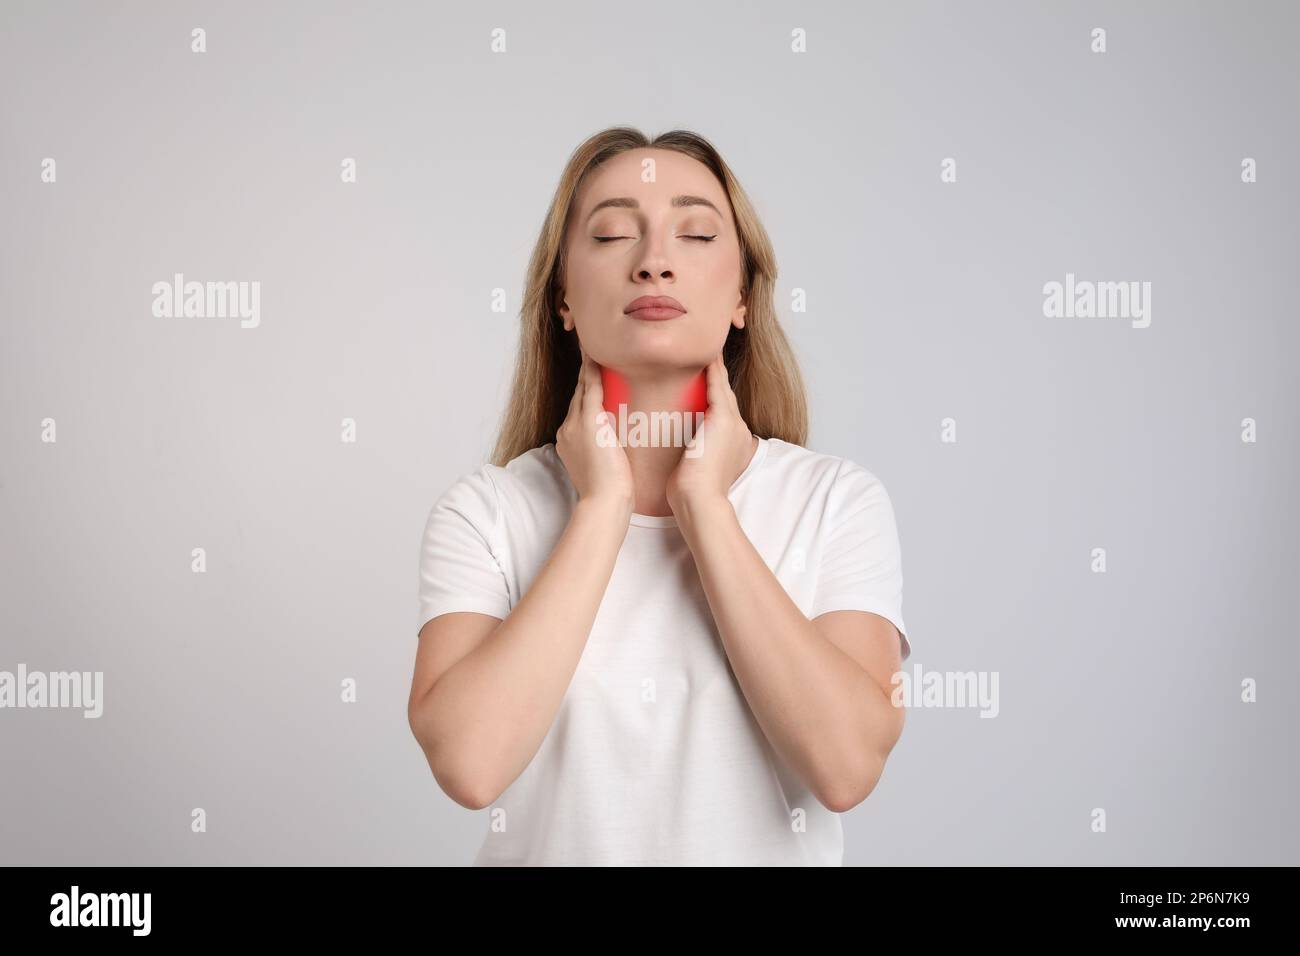 Junge Frau, die Schilddrüsen-Selbstuntersuchung auf hellgrauem Hintergrund durchführt Stockfoto